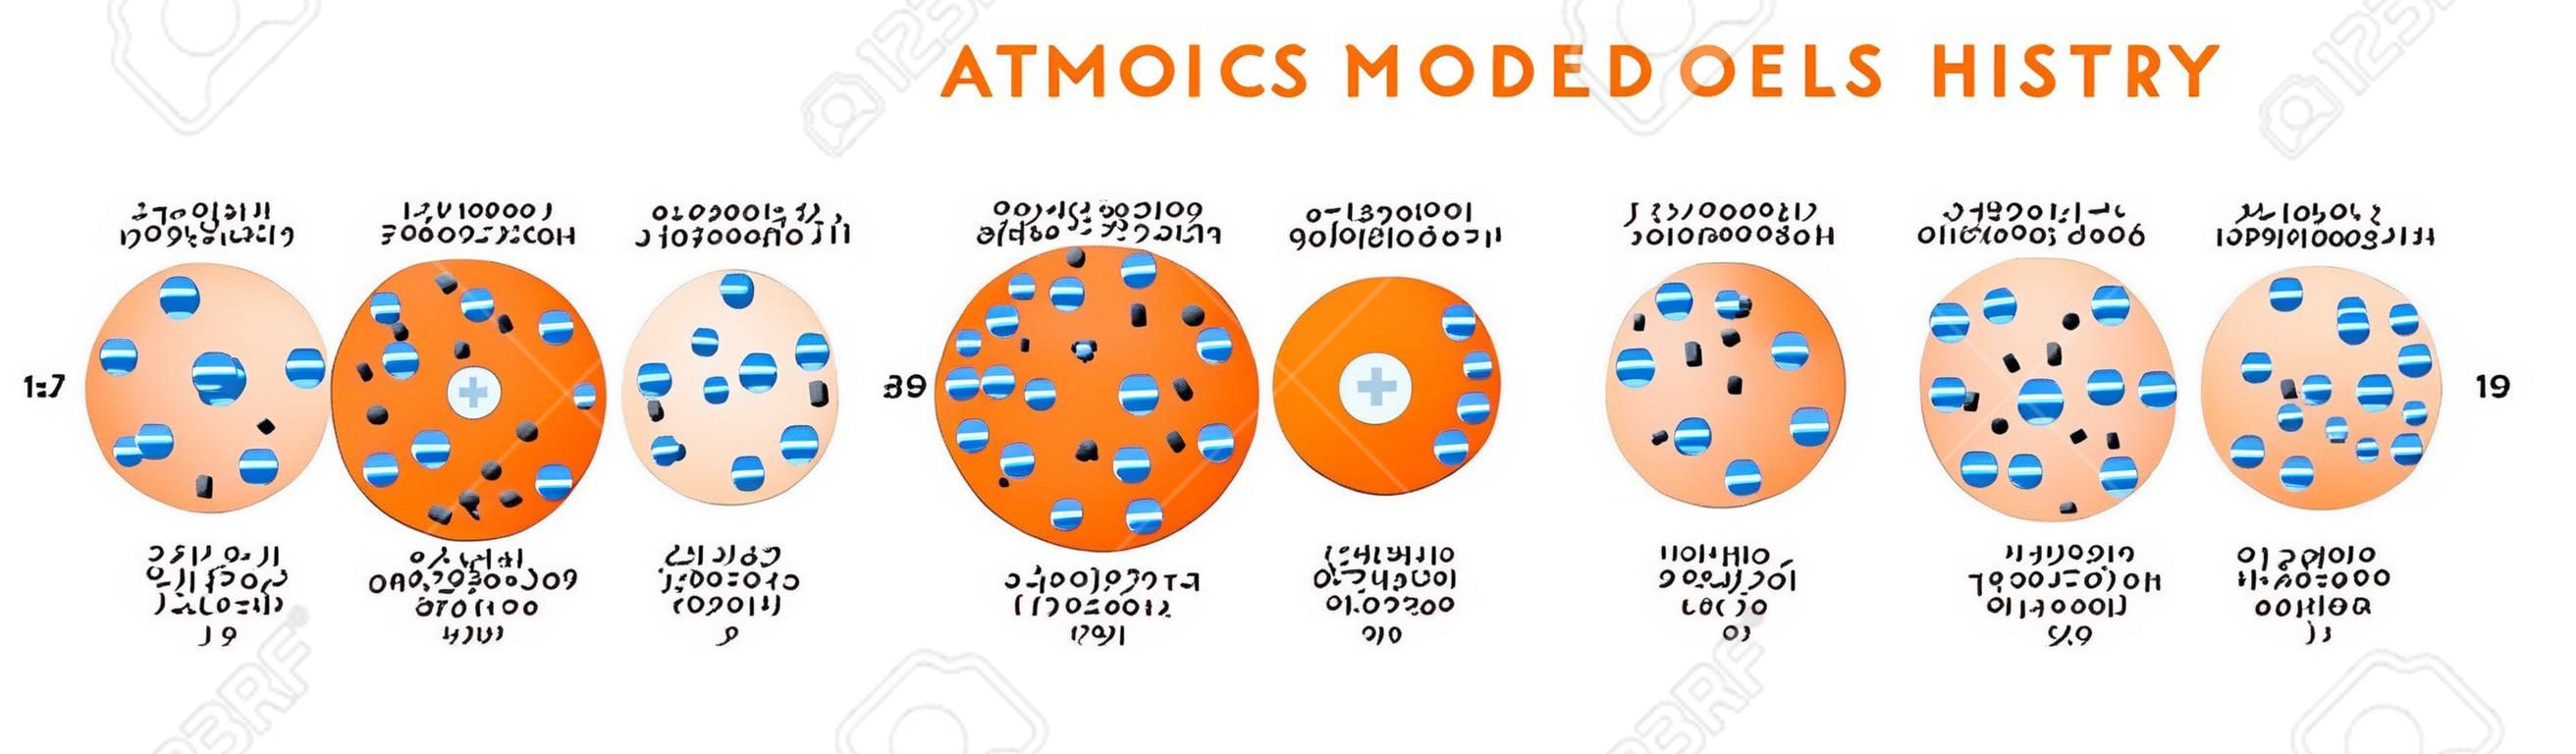 Diagrama infográfico de la historia de los modelos atómicos que incluye Democritus Dalton Tomson Rutherford Bohr Schrodinger estructuras atómicas para el vector del cartel de la educación en ciencias químicas